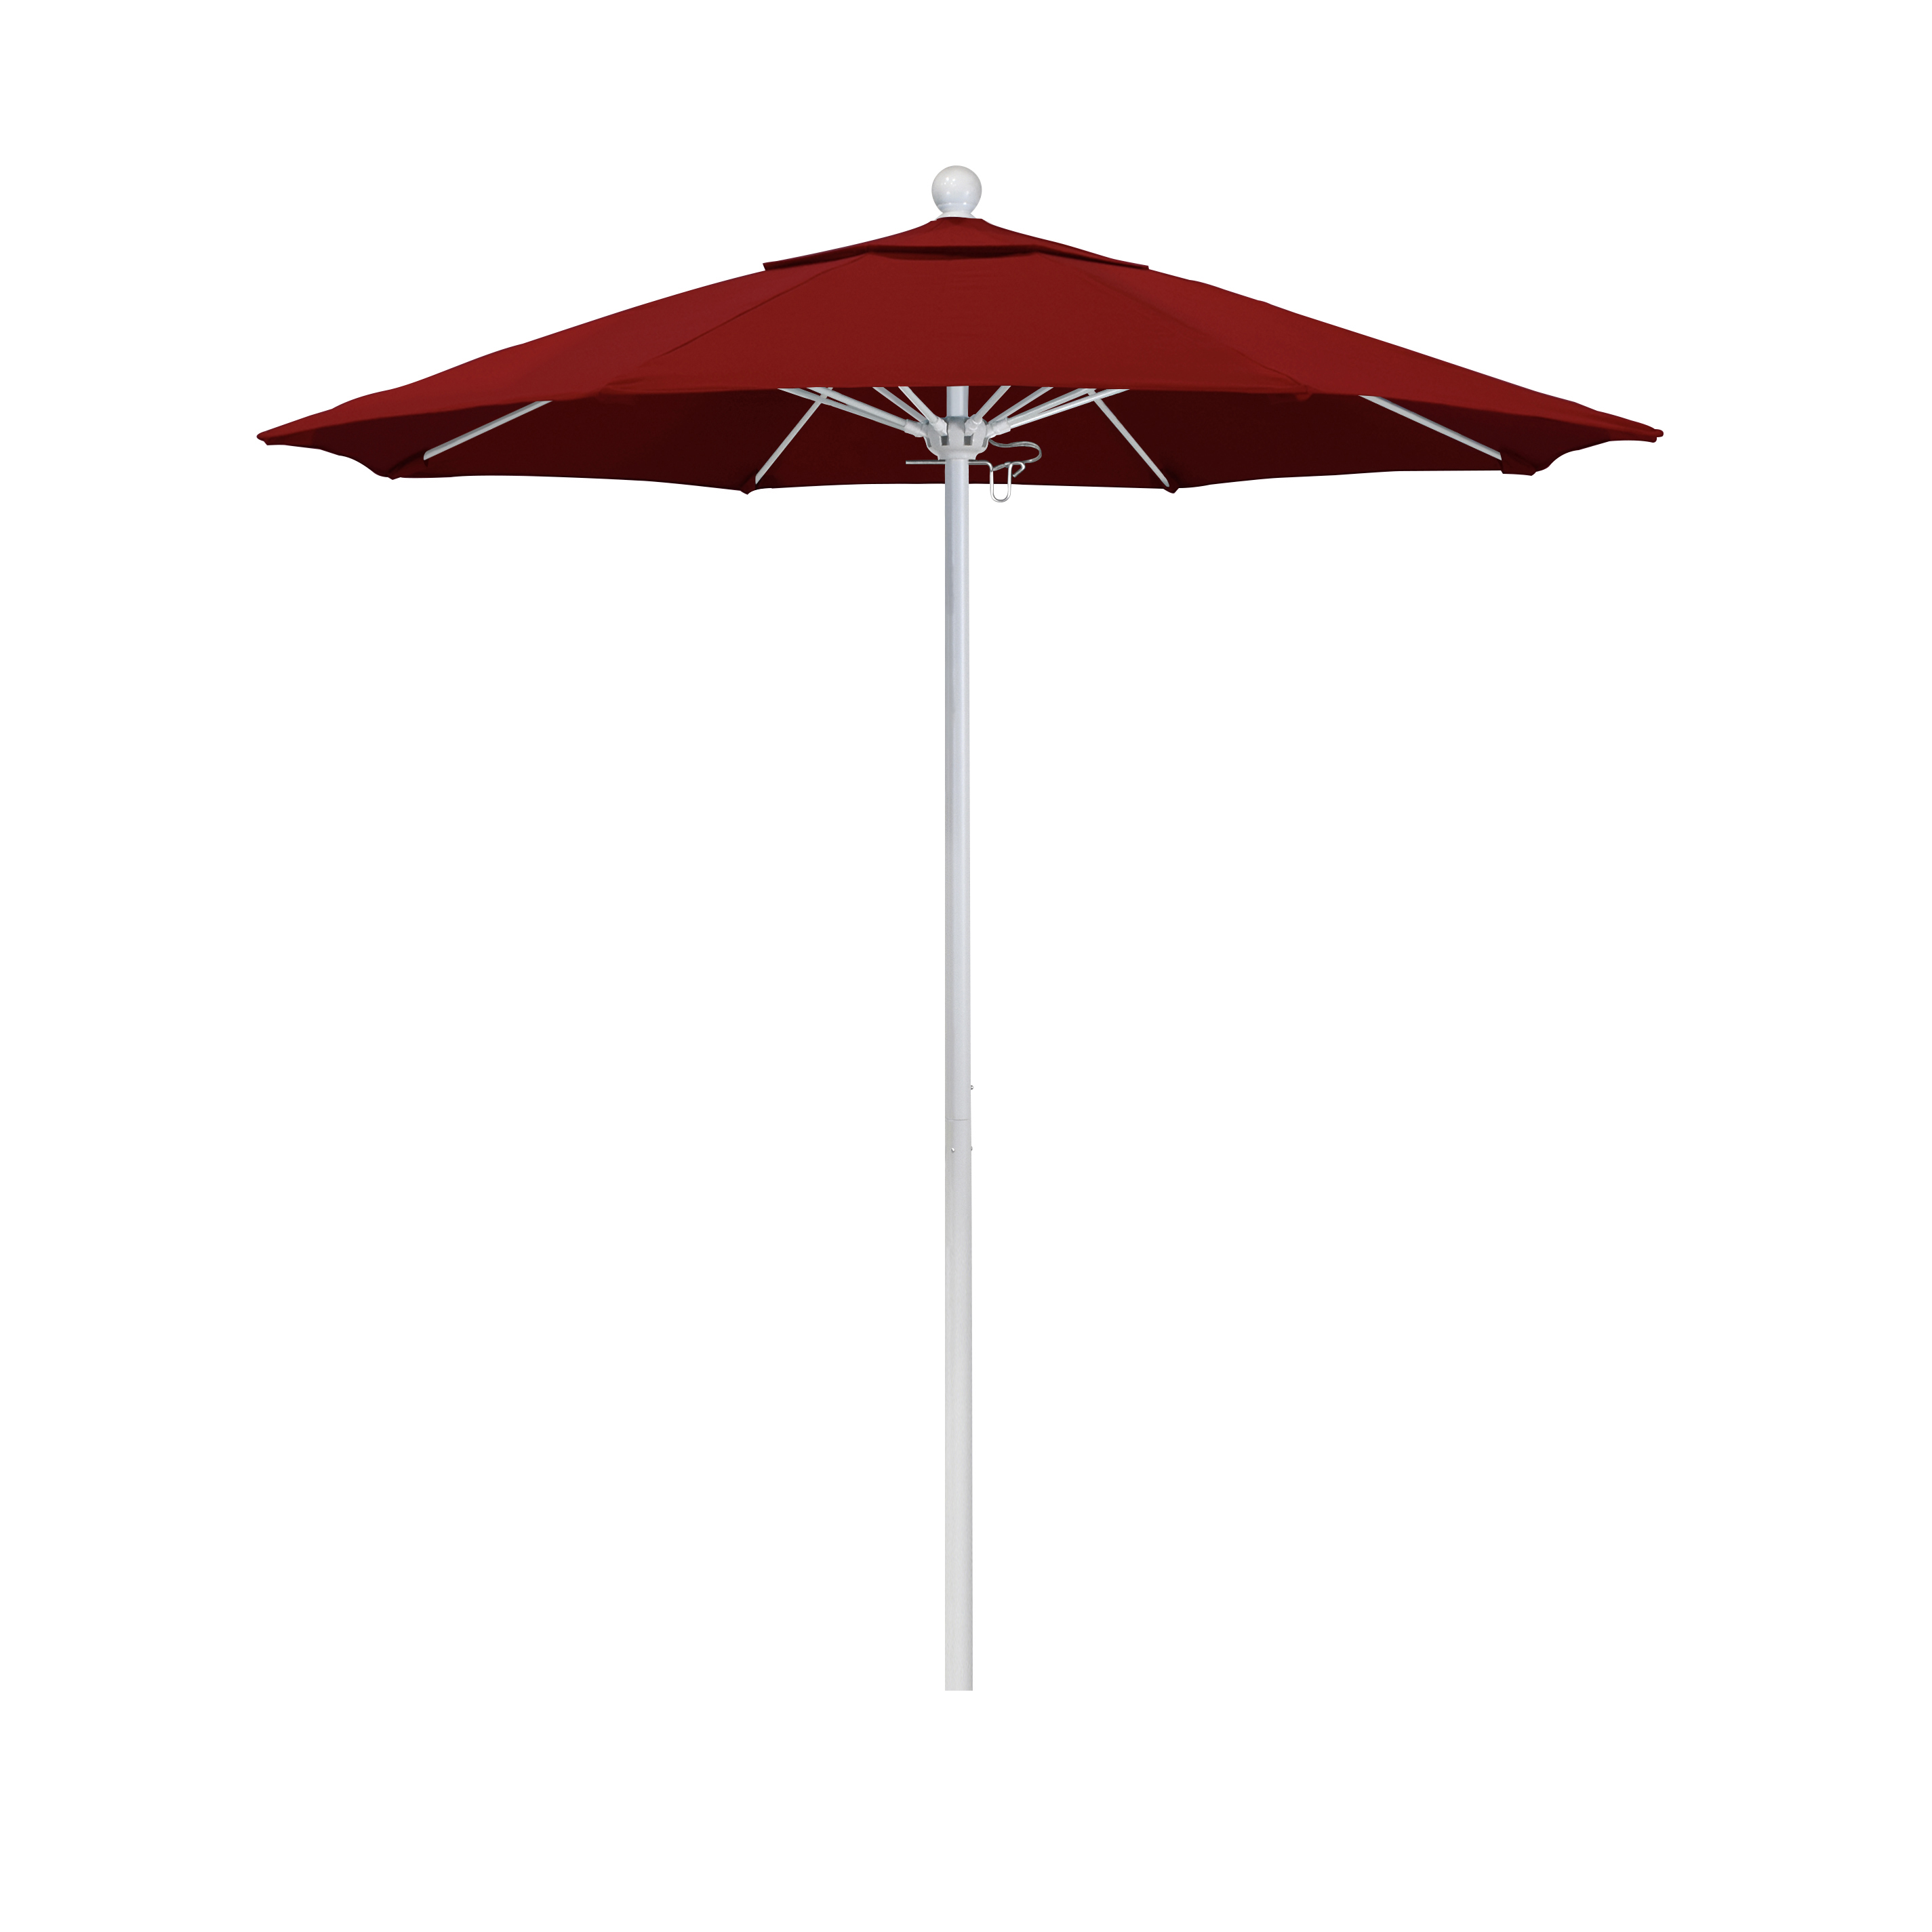 Alto758170-sa03 7.5 Ft. Fiberglass Market Umbrella Pulley Open Mwhite-pacifica-red